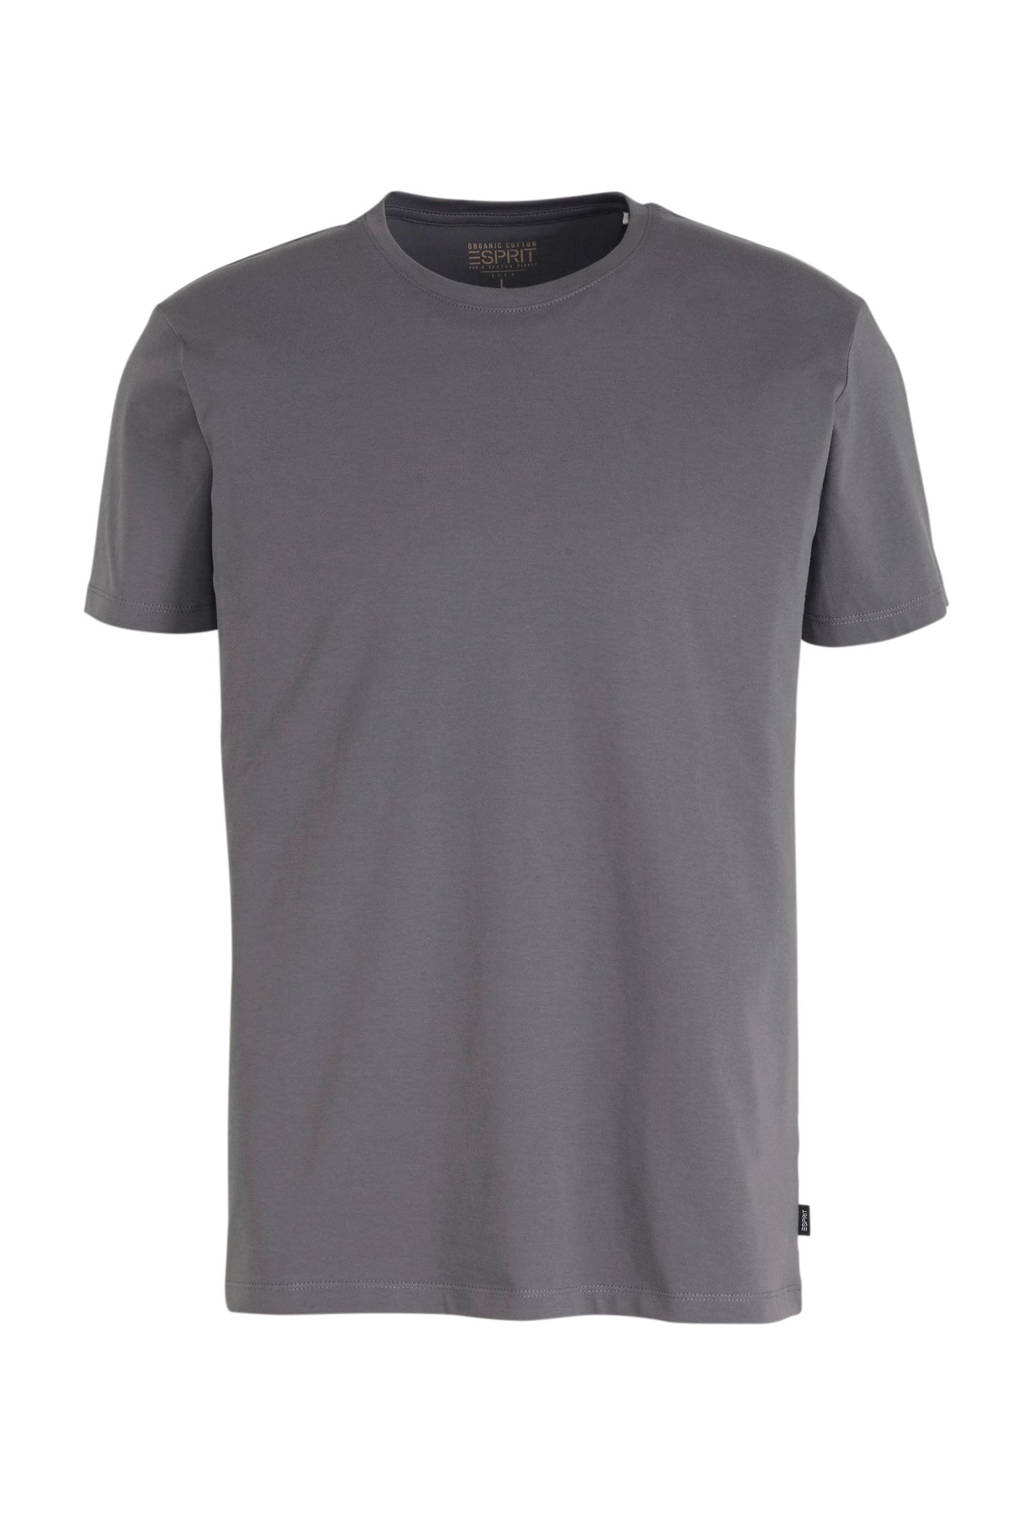 ESPRIT Men Casual T-shirt grijs